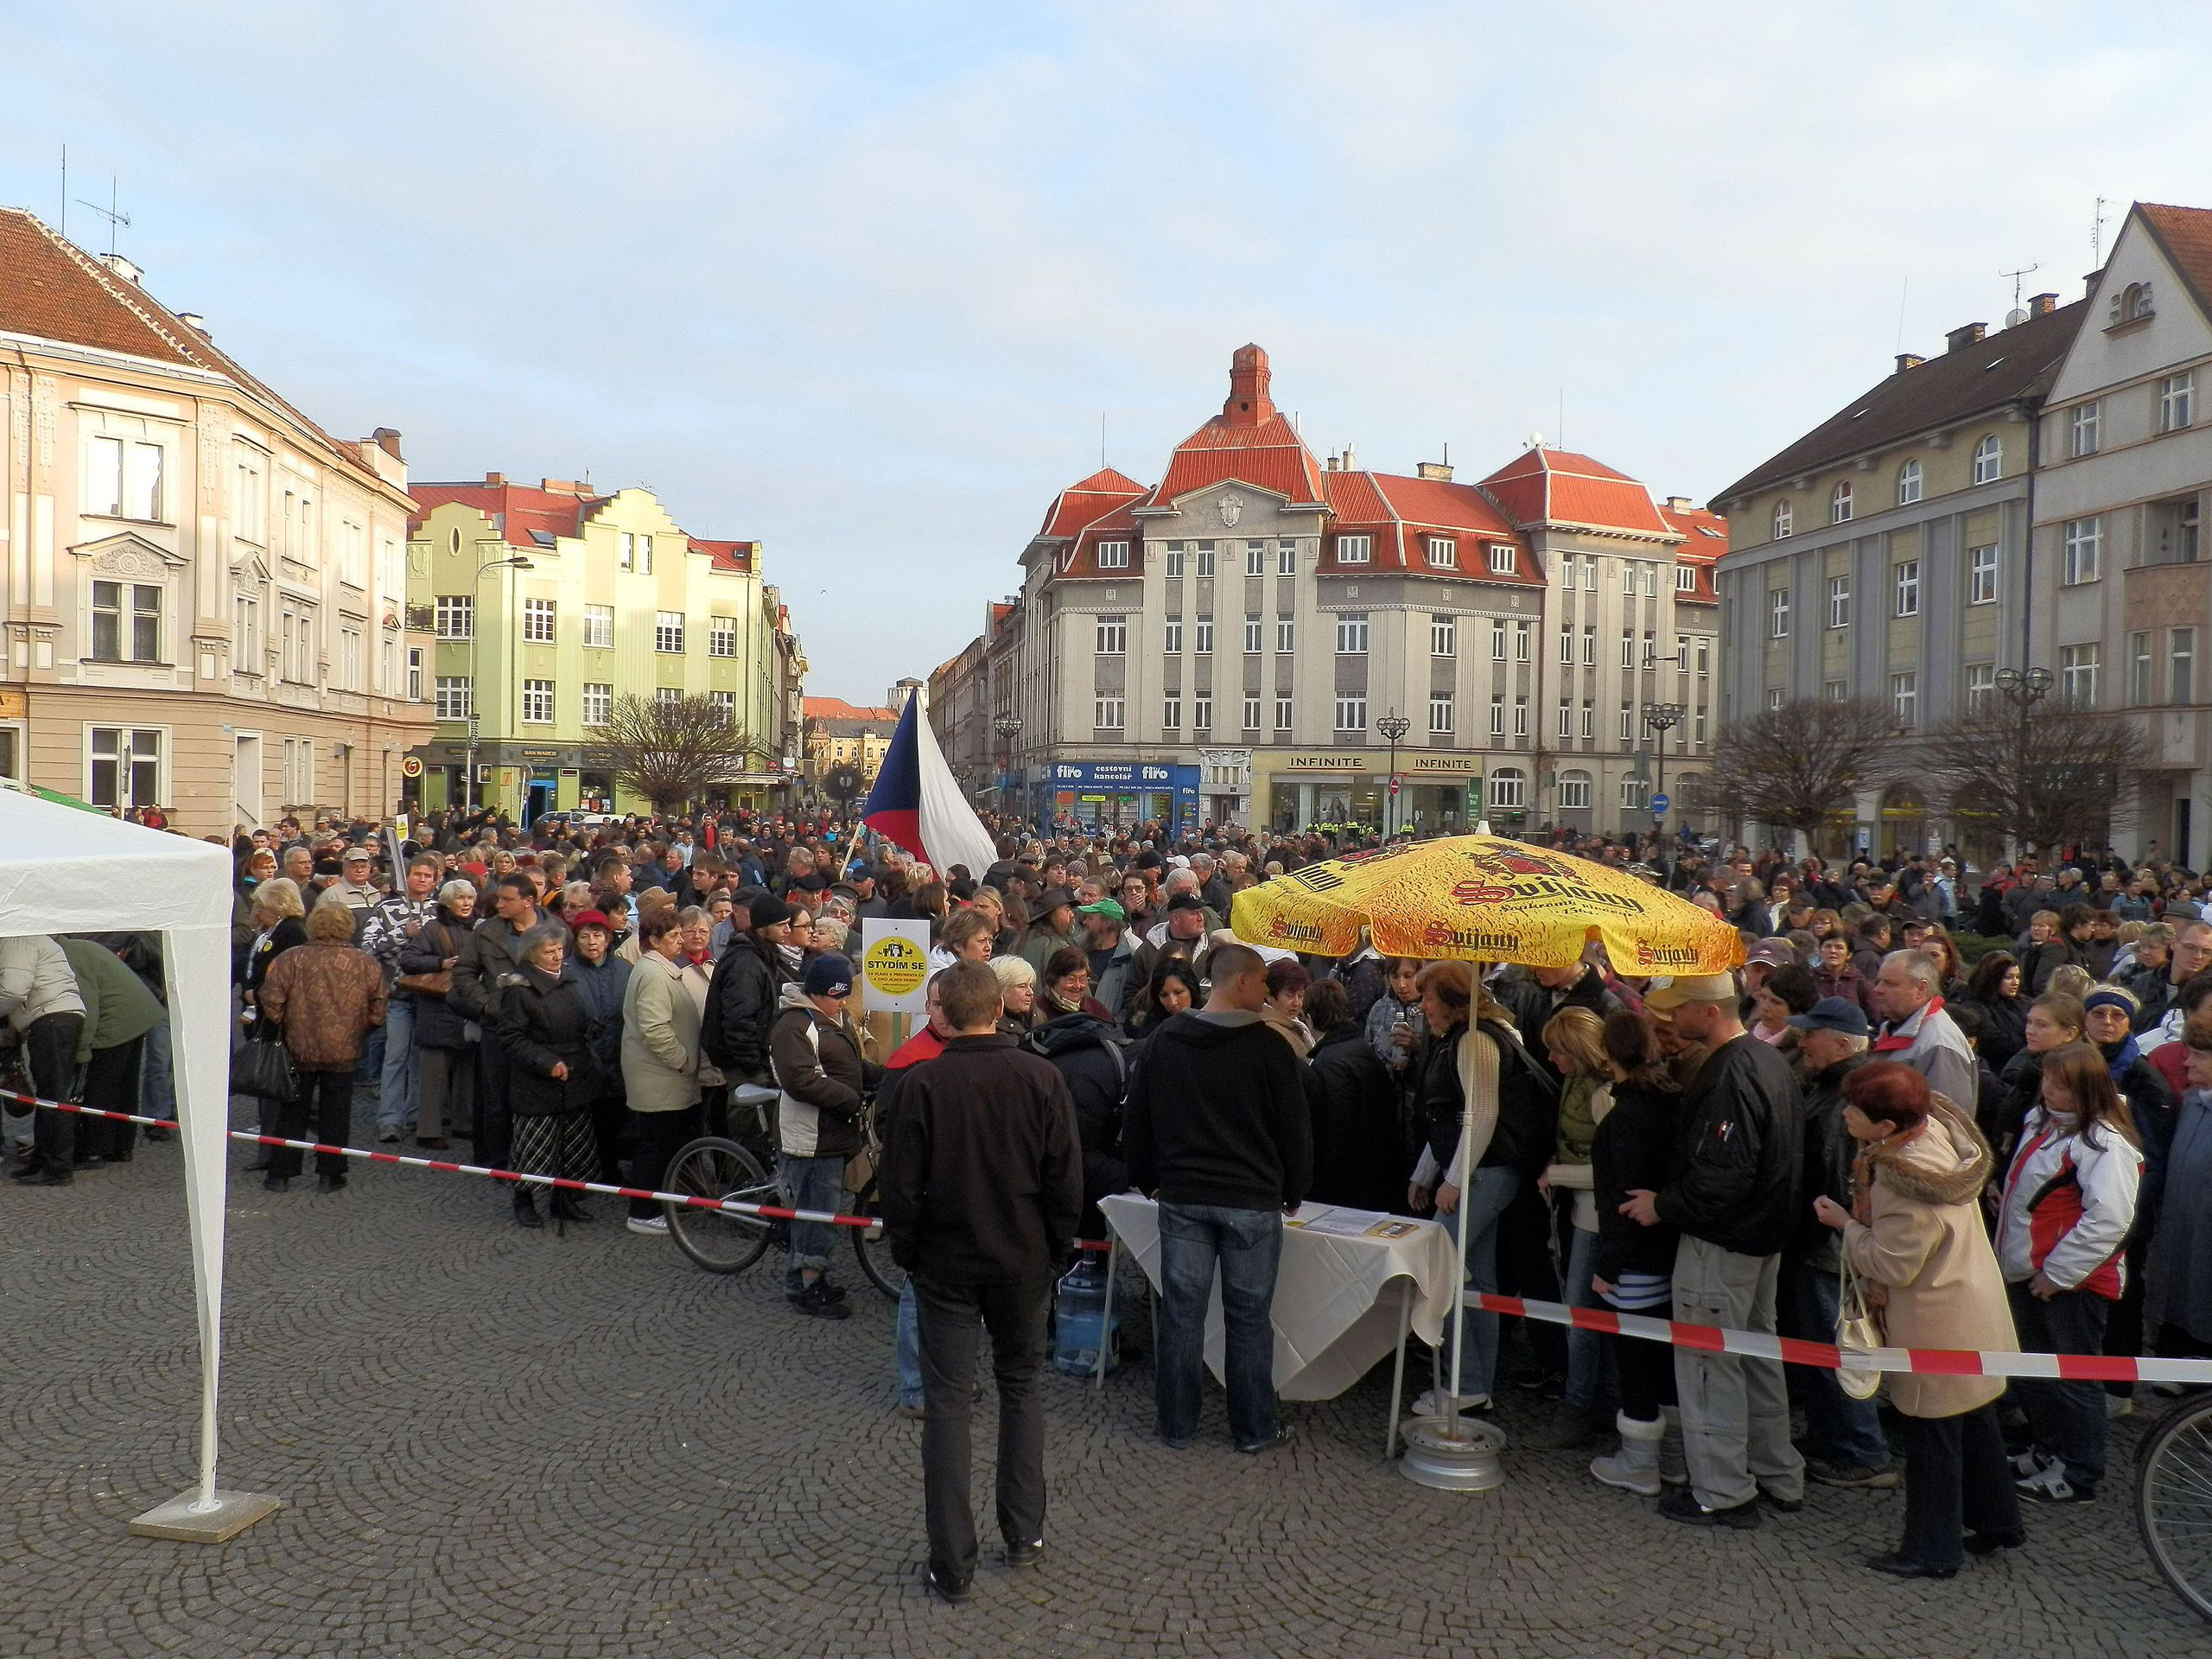 Lidé demonstrují proti vládě ČR a prezidentovi - 13 - Lidé protestují proti vládě Petra Nečase a prezidentu Klausovi (13/15)